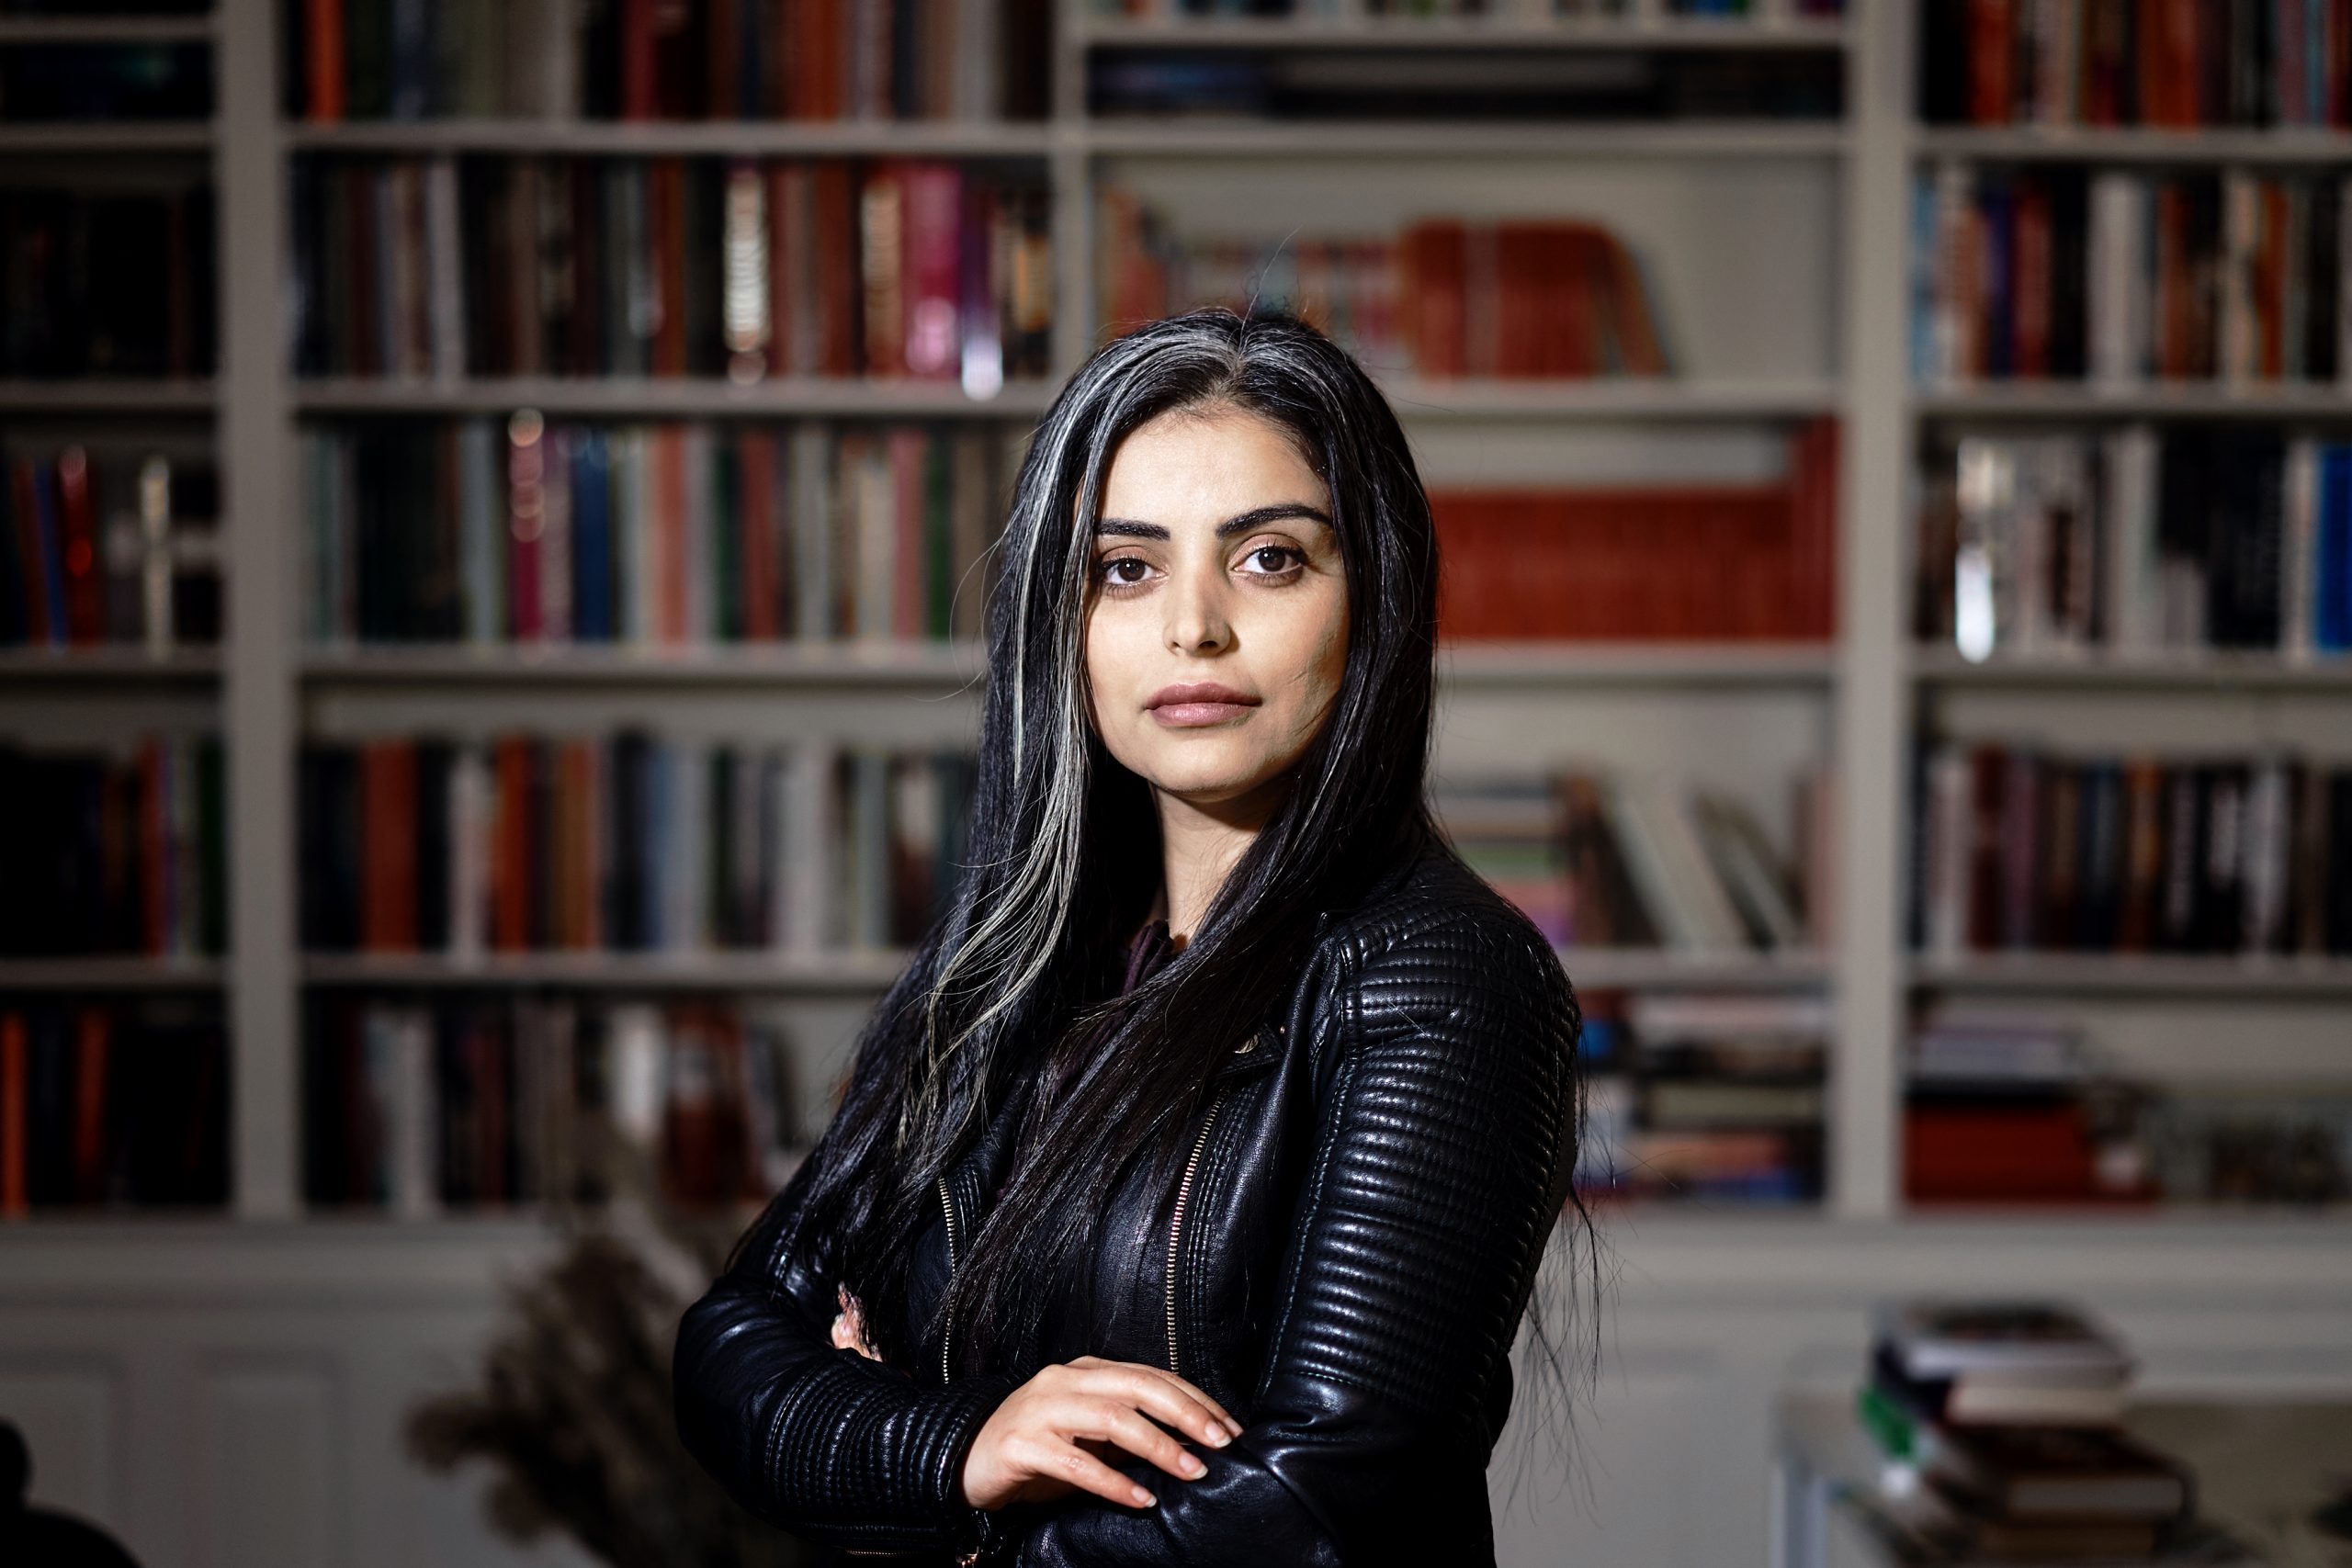 La autora danesa usa su voz para denunciar la violencia infligida a las mujeres en nombre del islam reaccionario. Foto: Thibault Savary/AFP